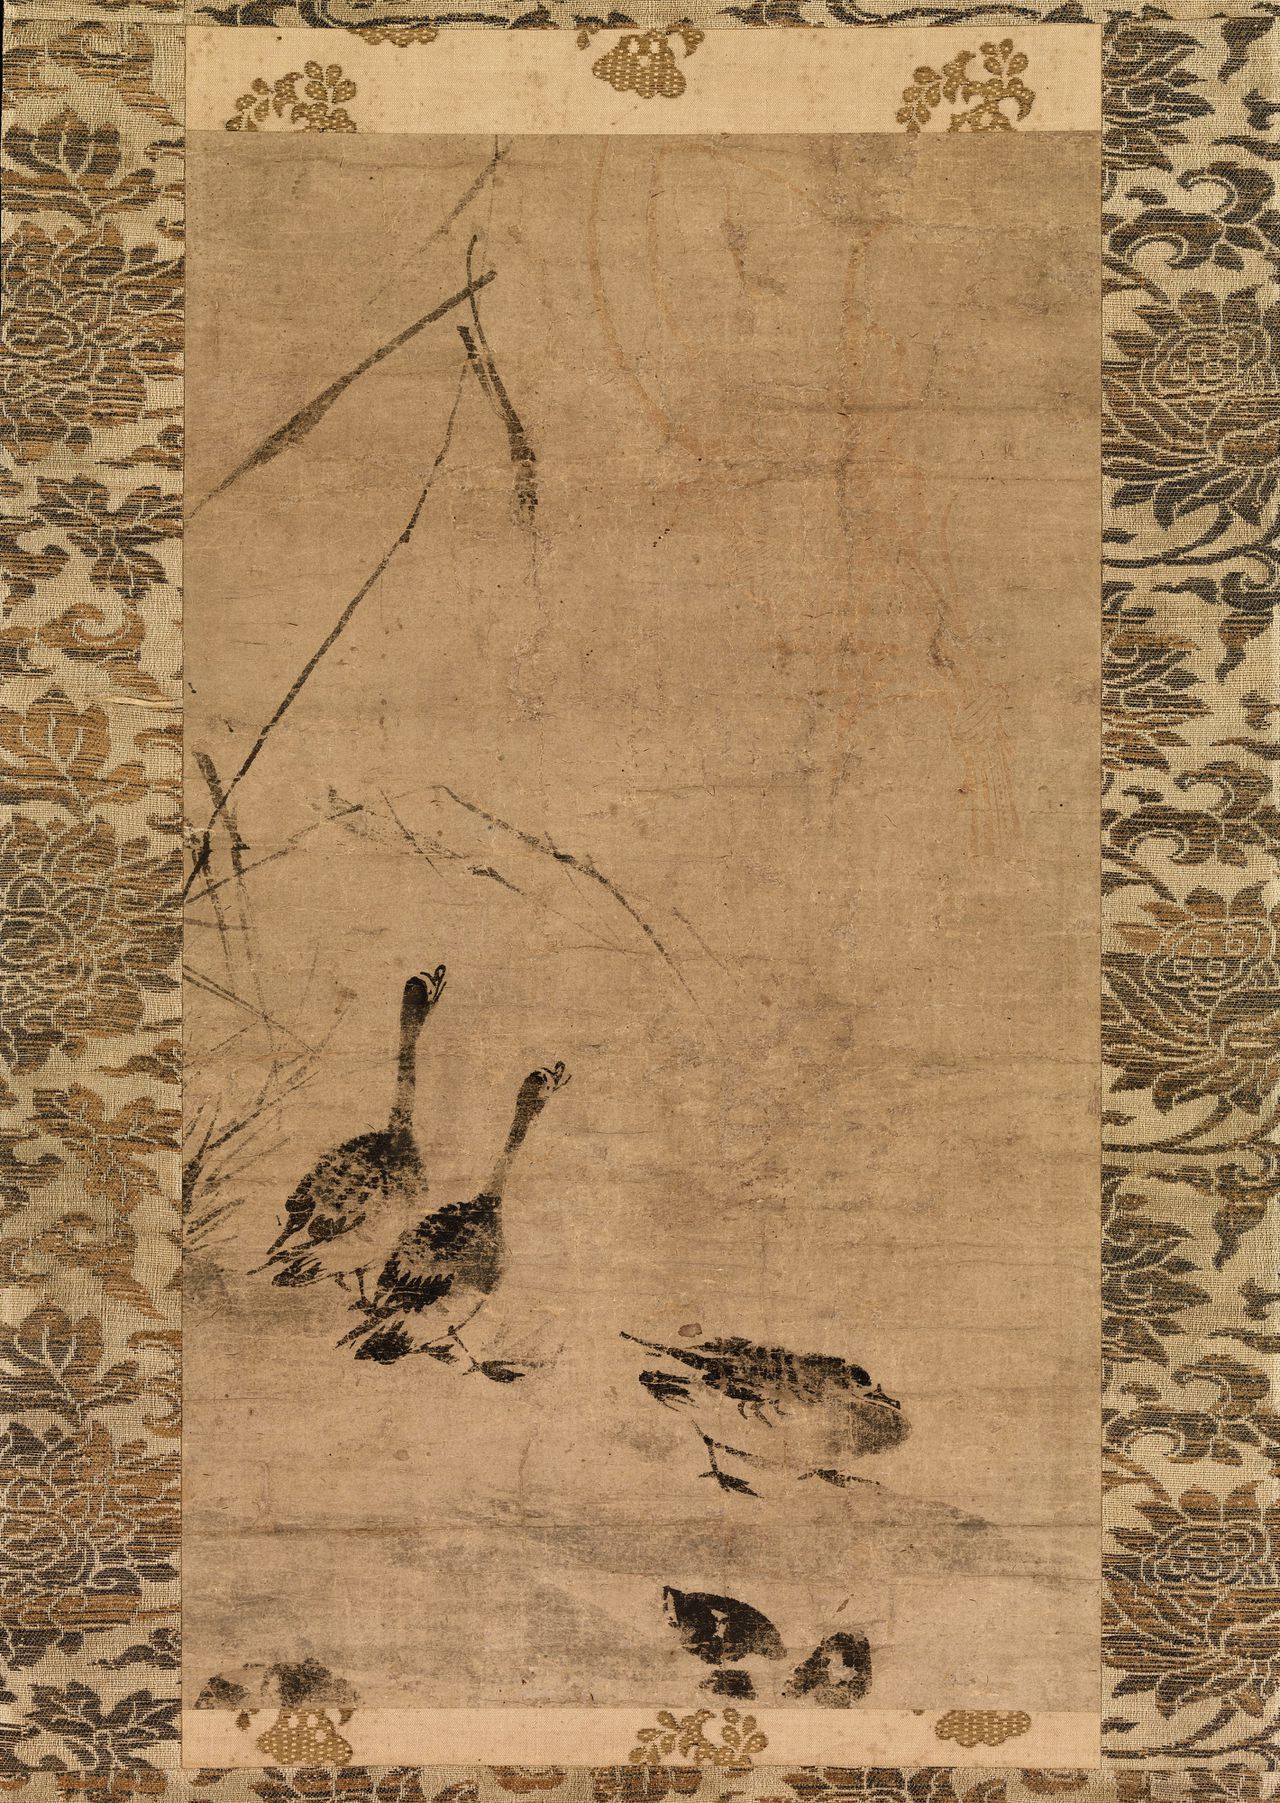 Ganzen in het riet, Japanse tekening uit het einde van 14de eeuw door een onbekende kunstenaar.